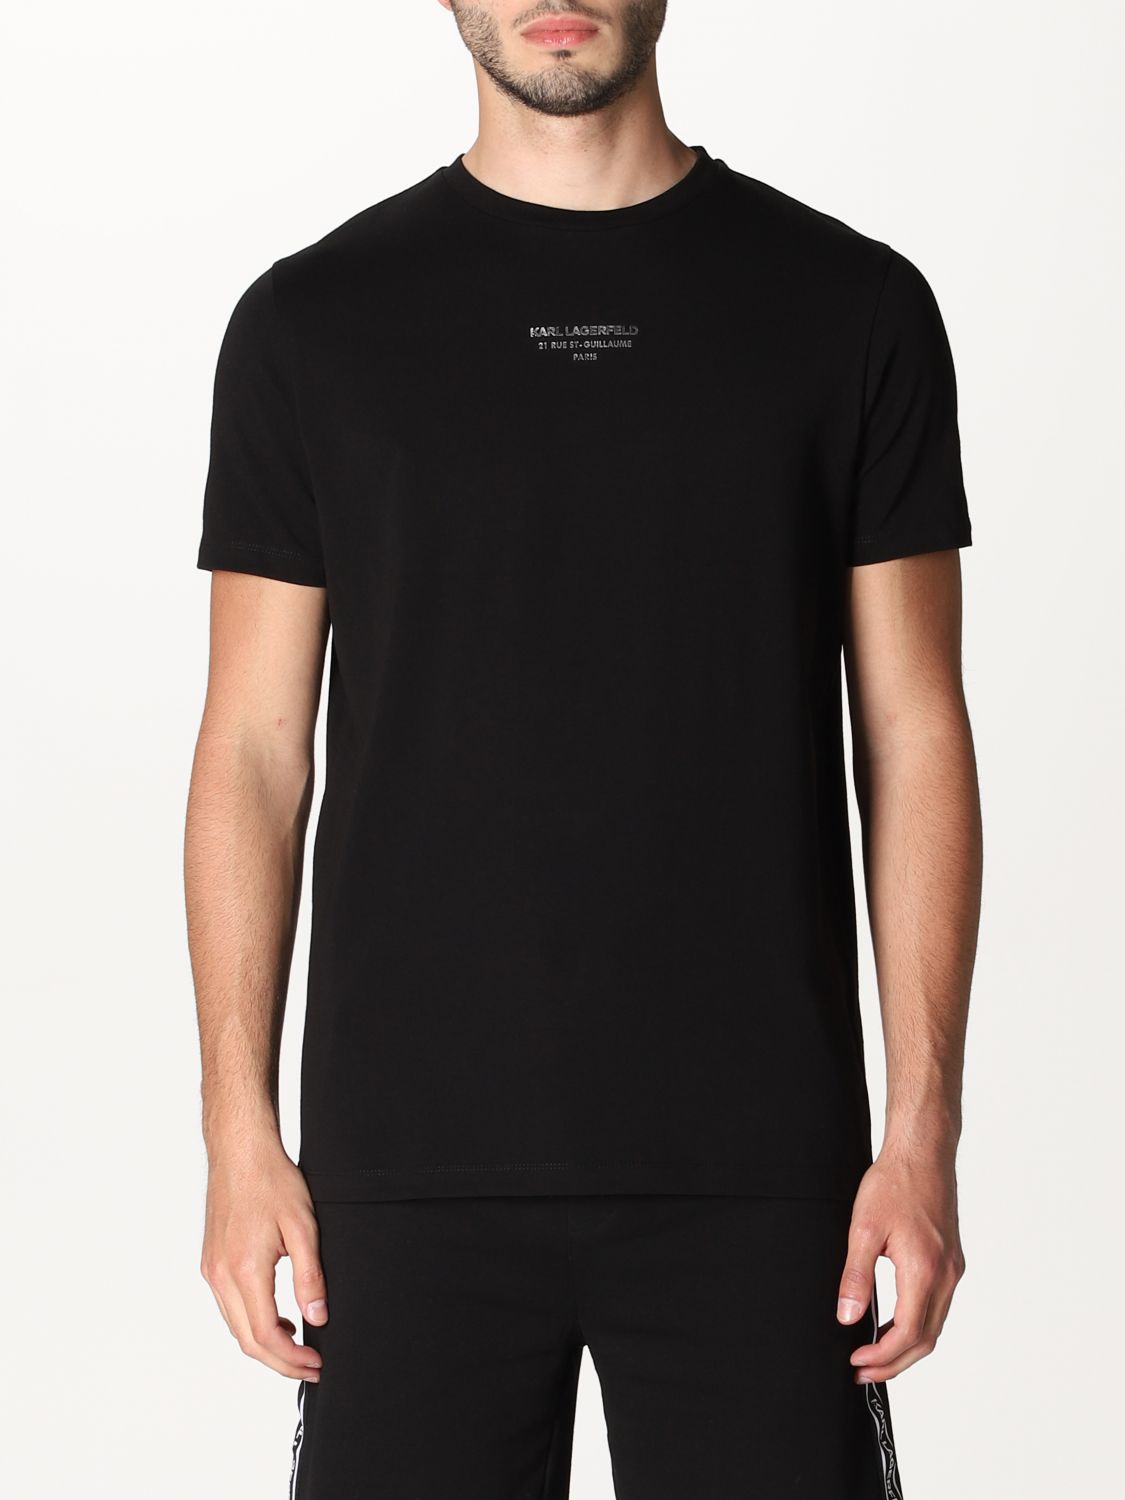 Karl Lagerfeld Outlet: t-shirt for men - Black | Karl Lagerfeld t-shirt ...